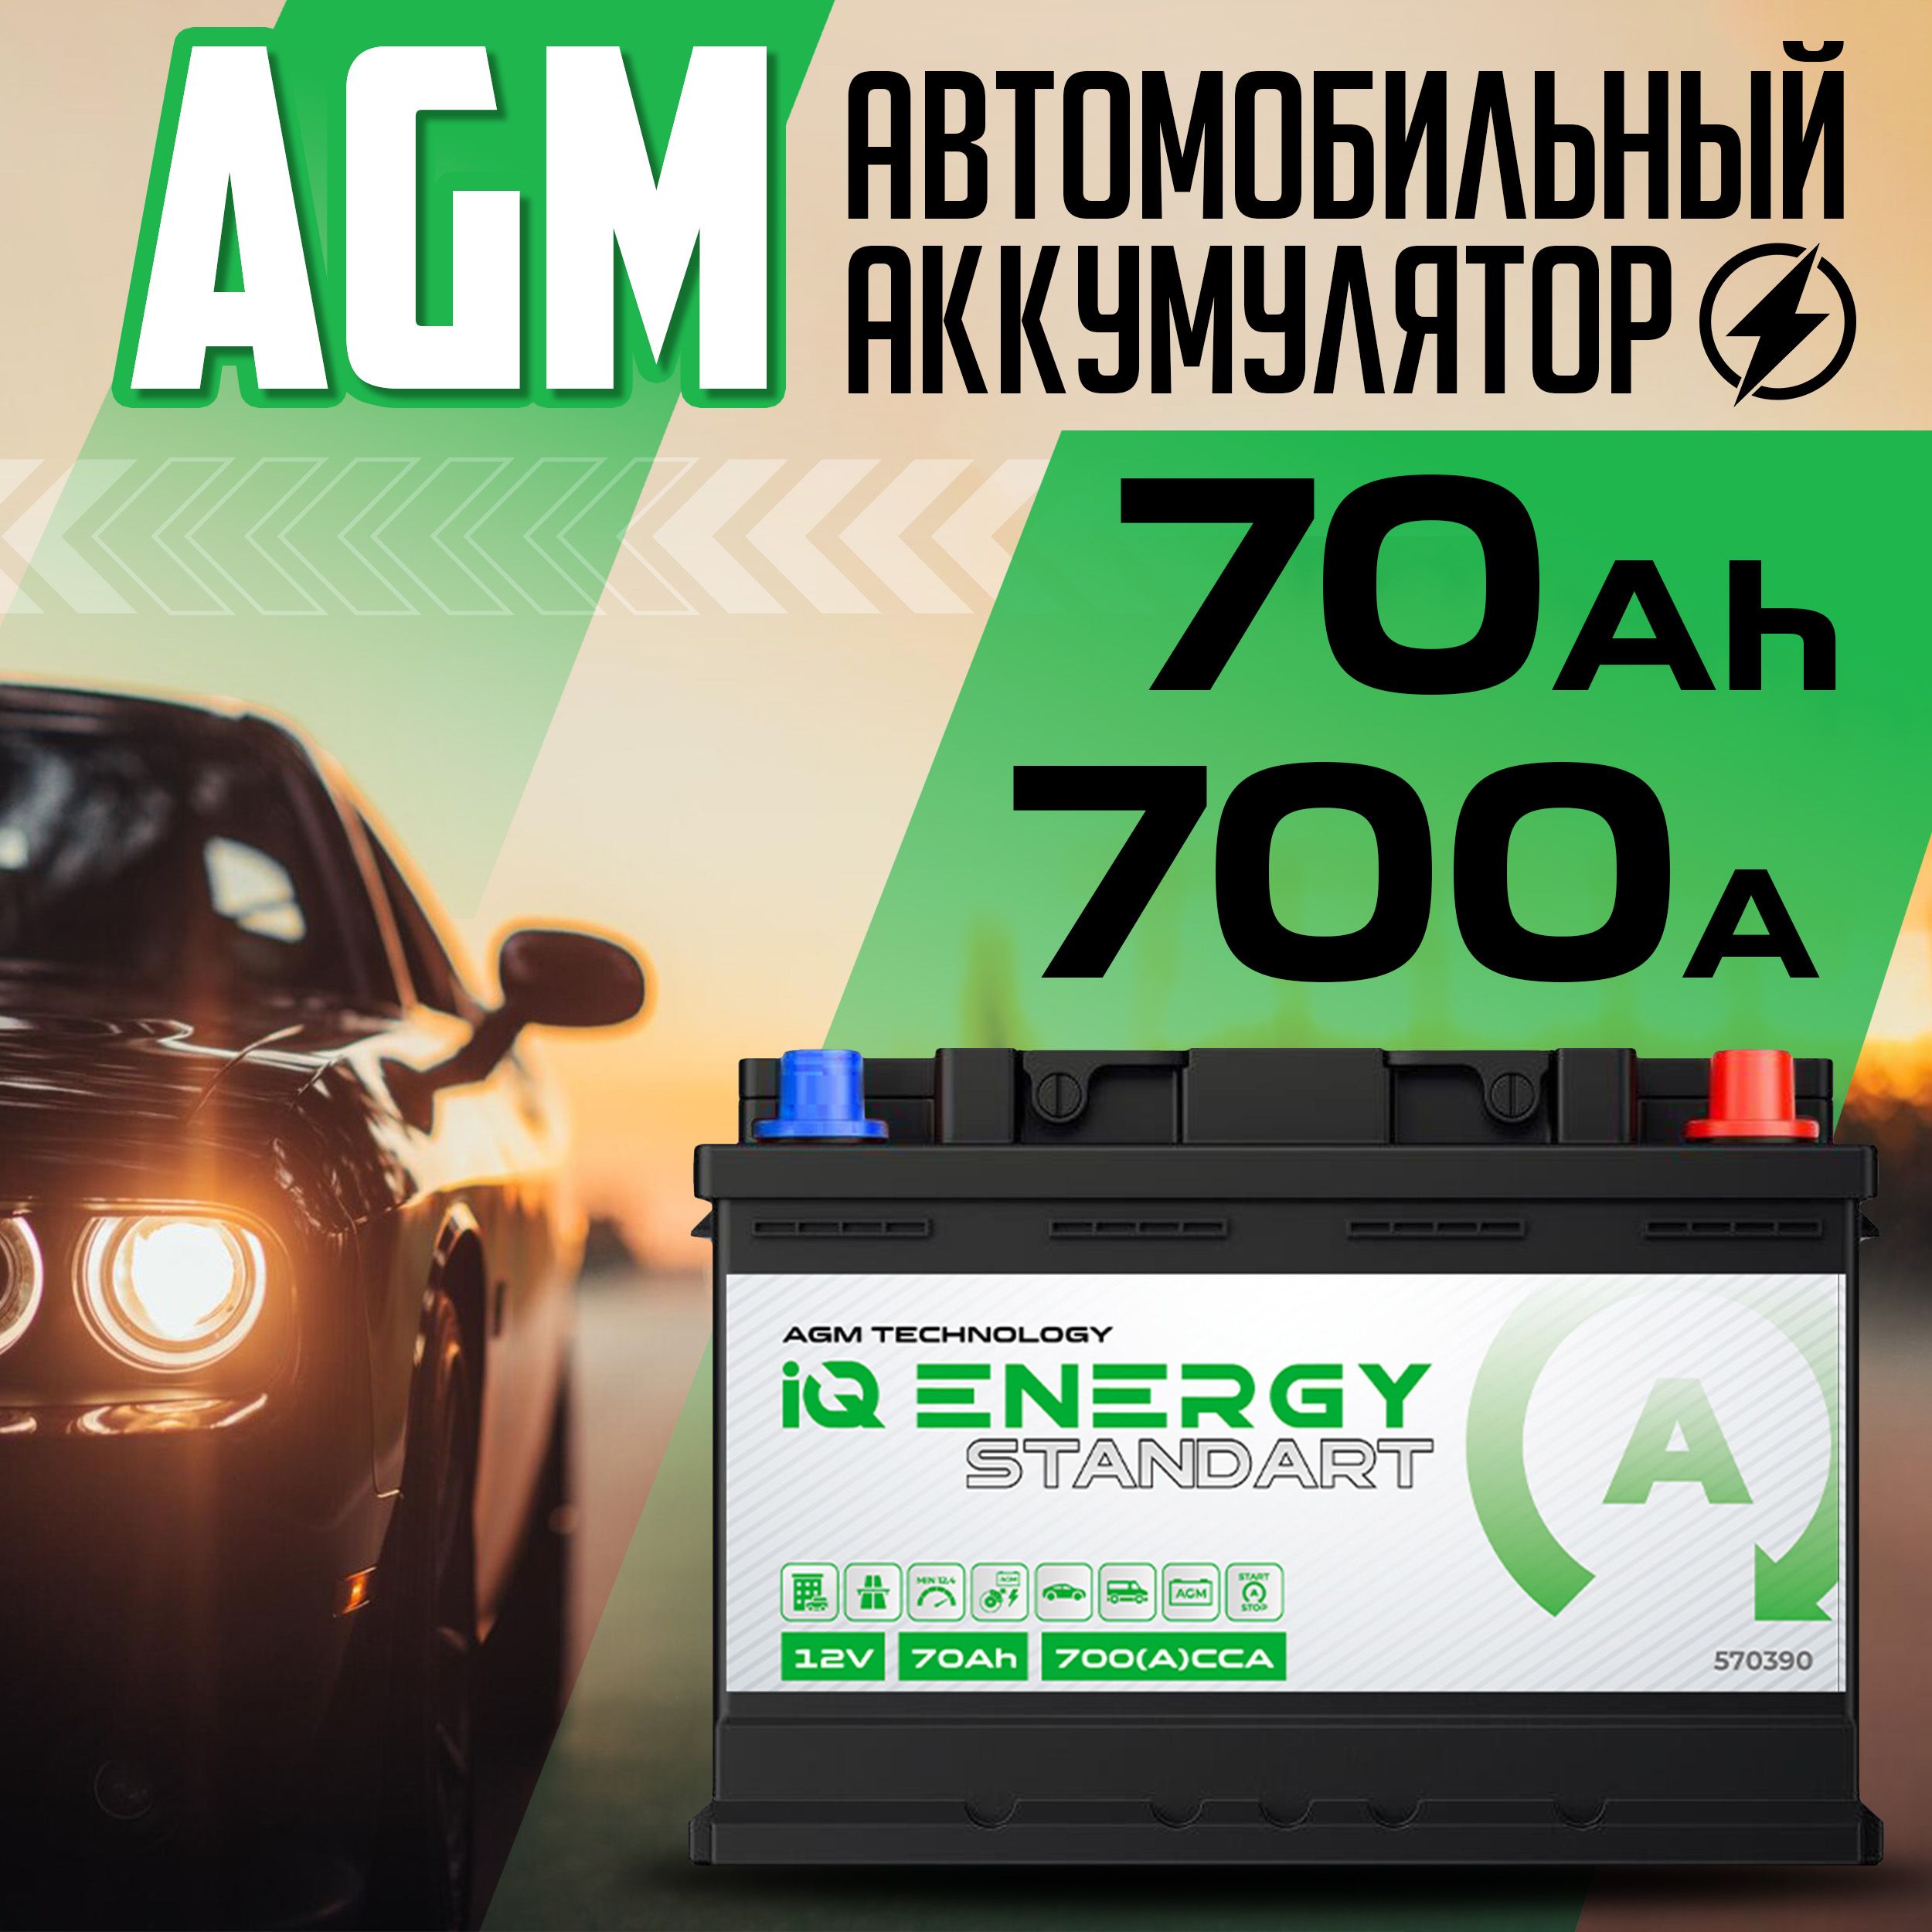 Аккумуляторы Автомобильные 70А Агм – купить в интернет-магазине OZON по  низкой цене